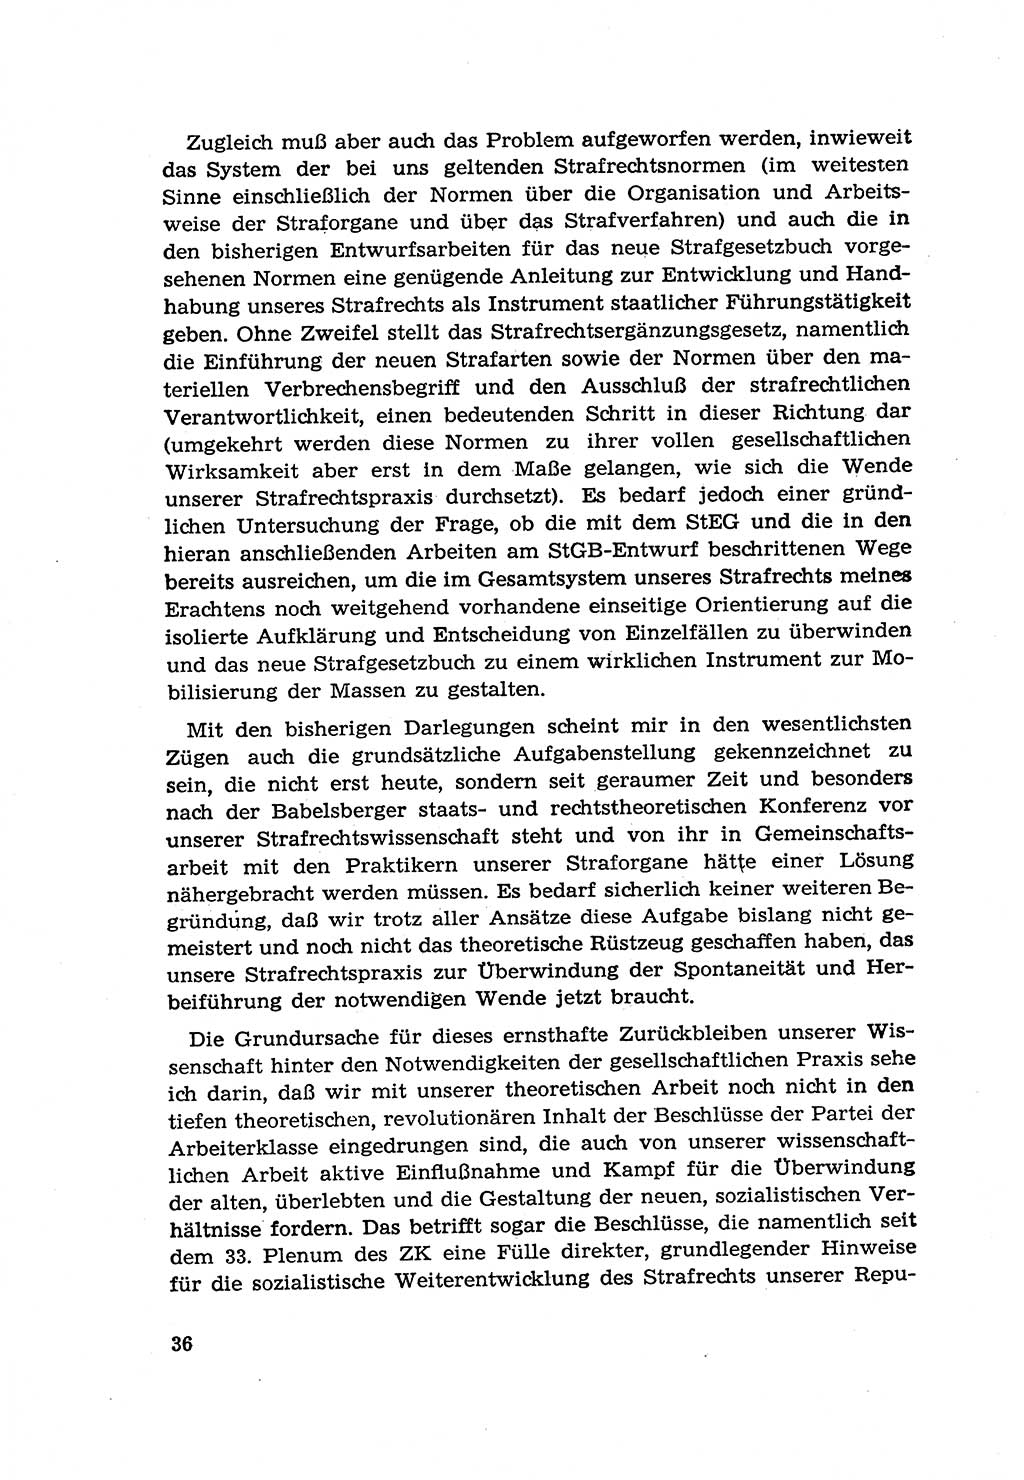 Zur Entwicklung des sozialistischen Strafrechts der Deutschen Demokratischen Republik (DDR) 1960, Seite 36 (Entw. soz. Strafr. DDR 1960, S. 36)